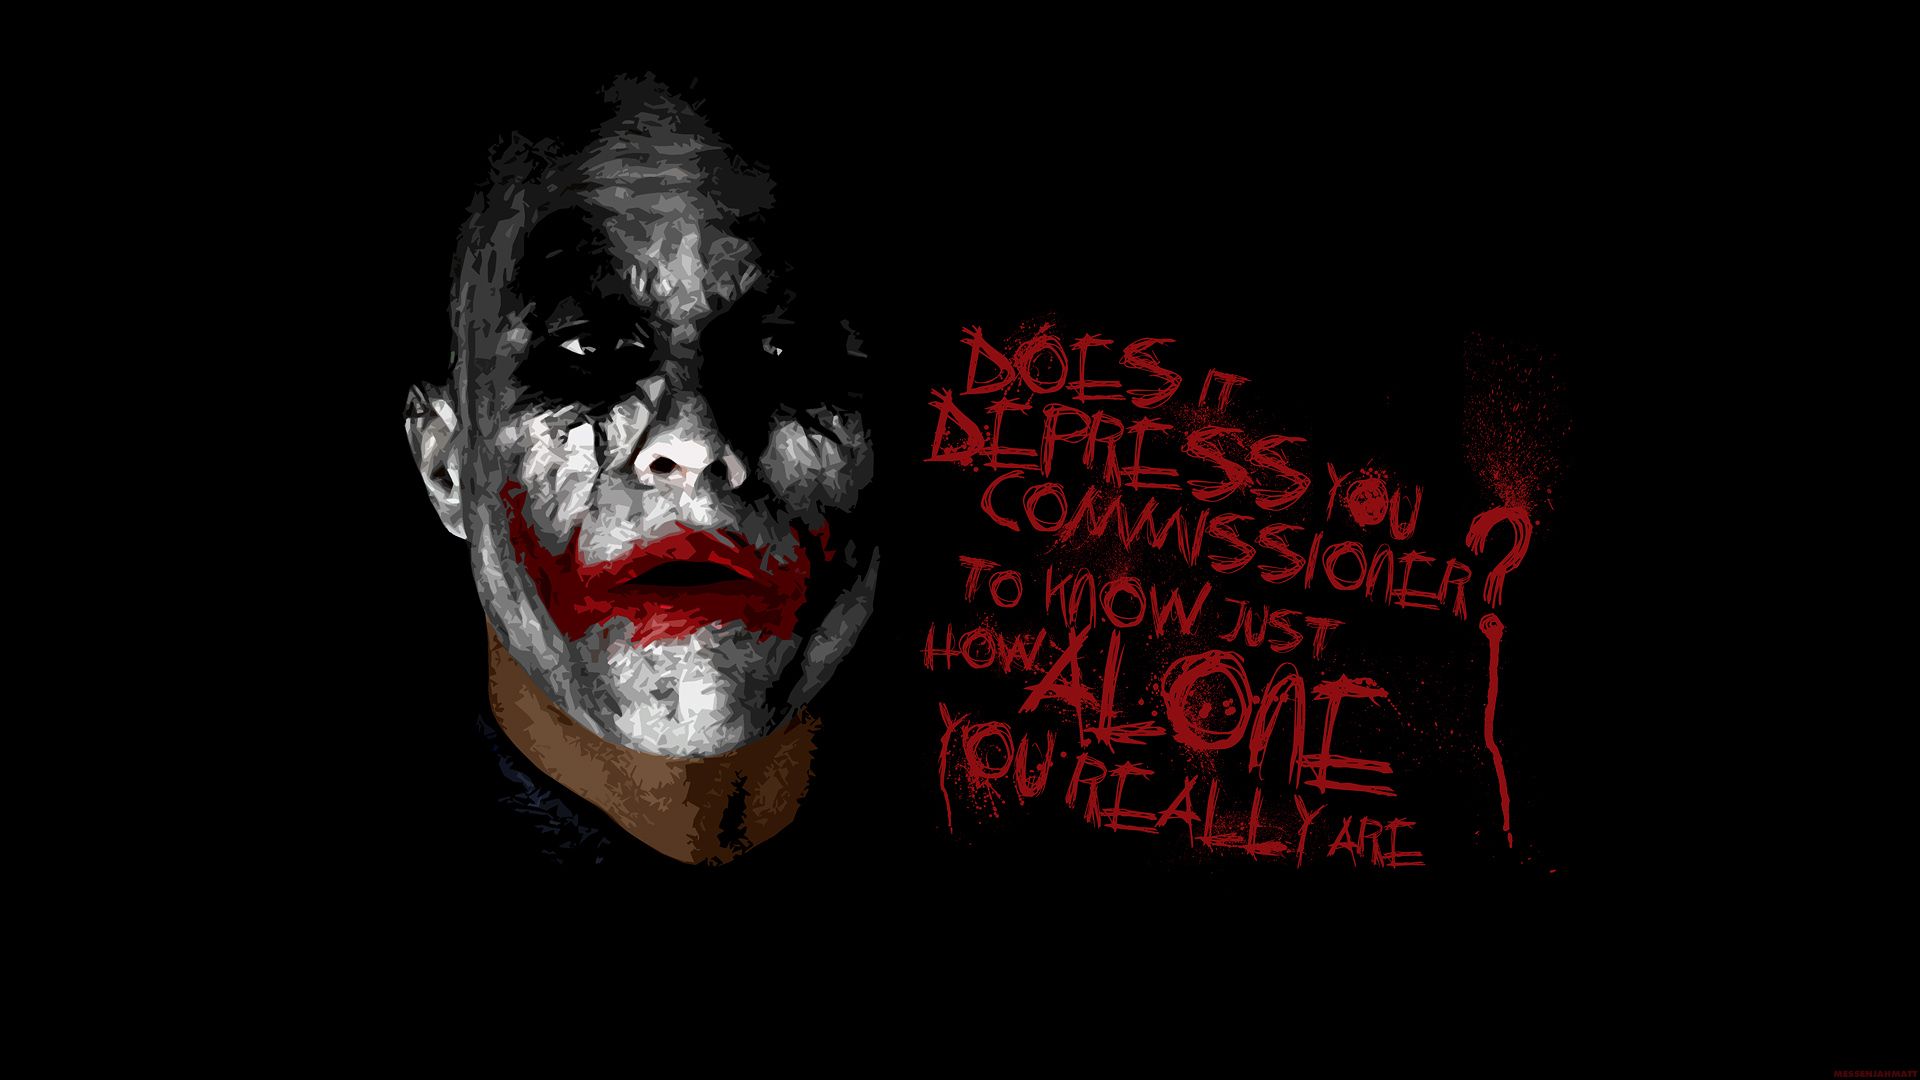 Batman And Joker Wallpaper